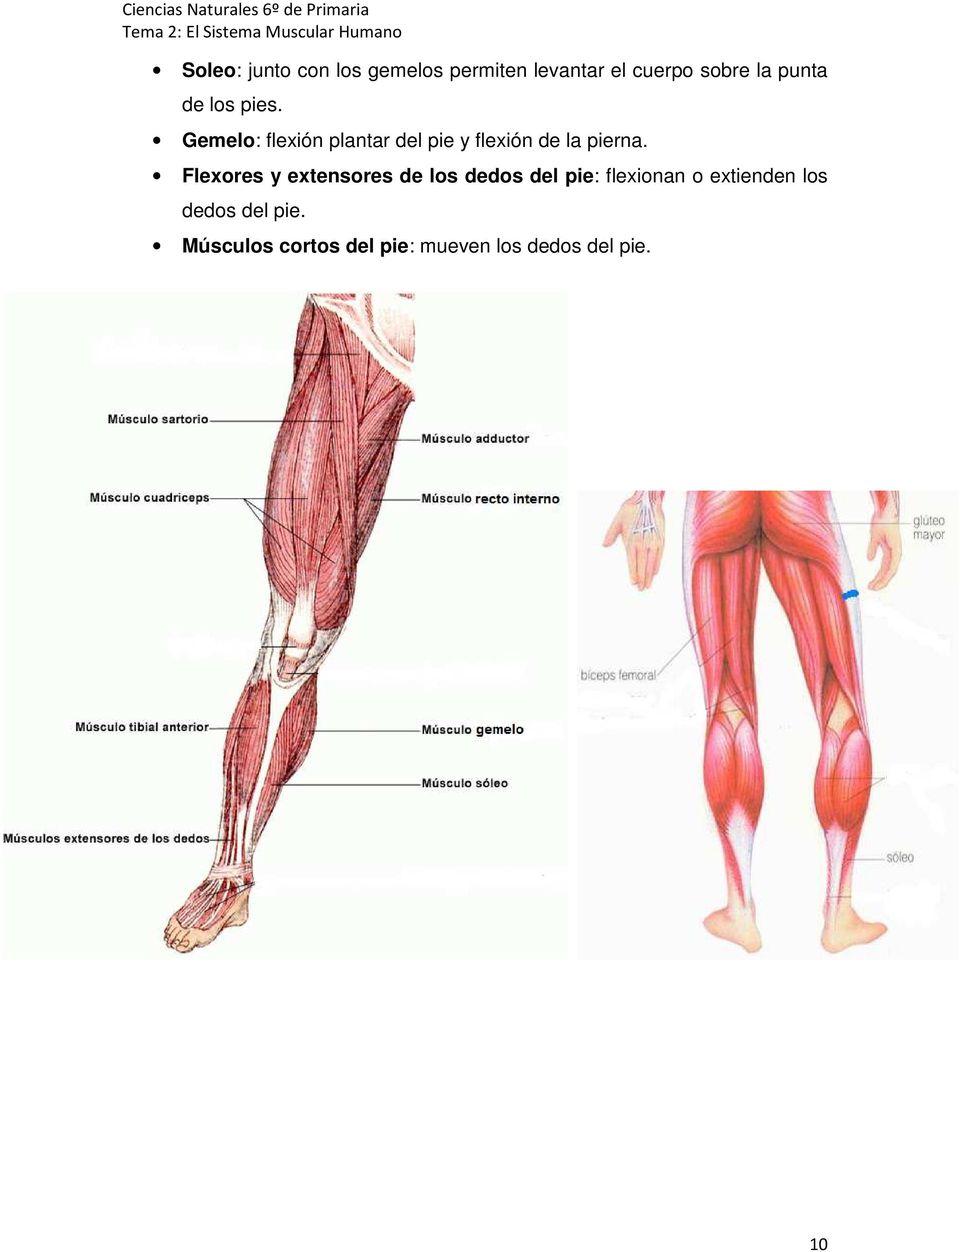 Gemelo: flexión plantar del pie y flexión de la pierna.